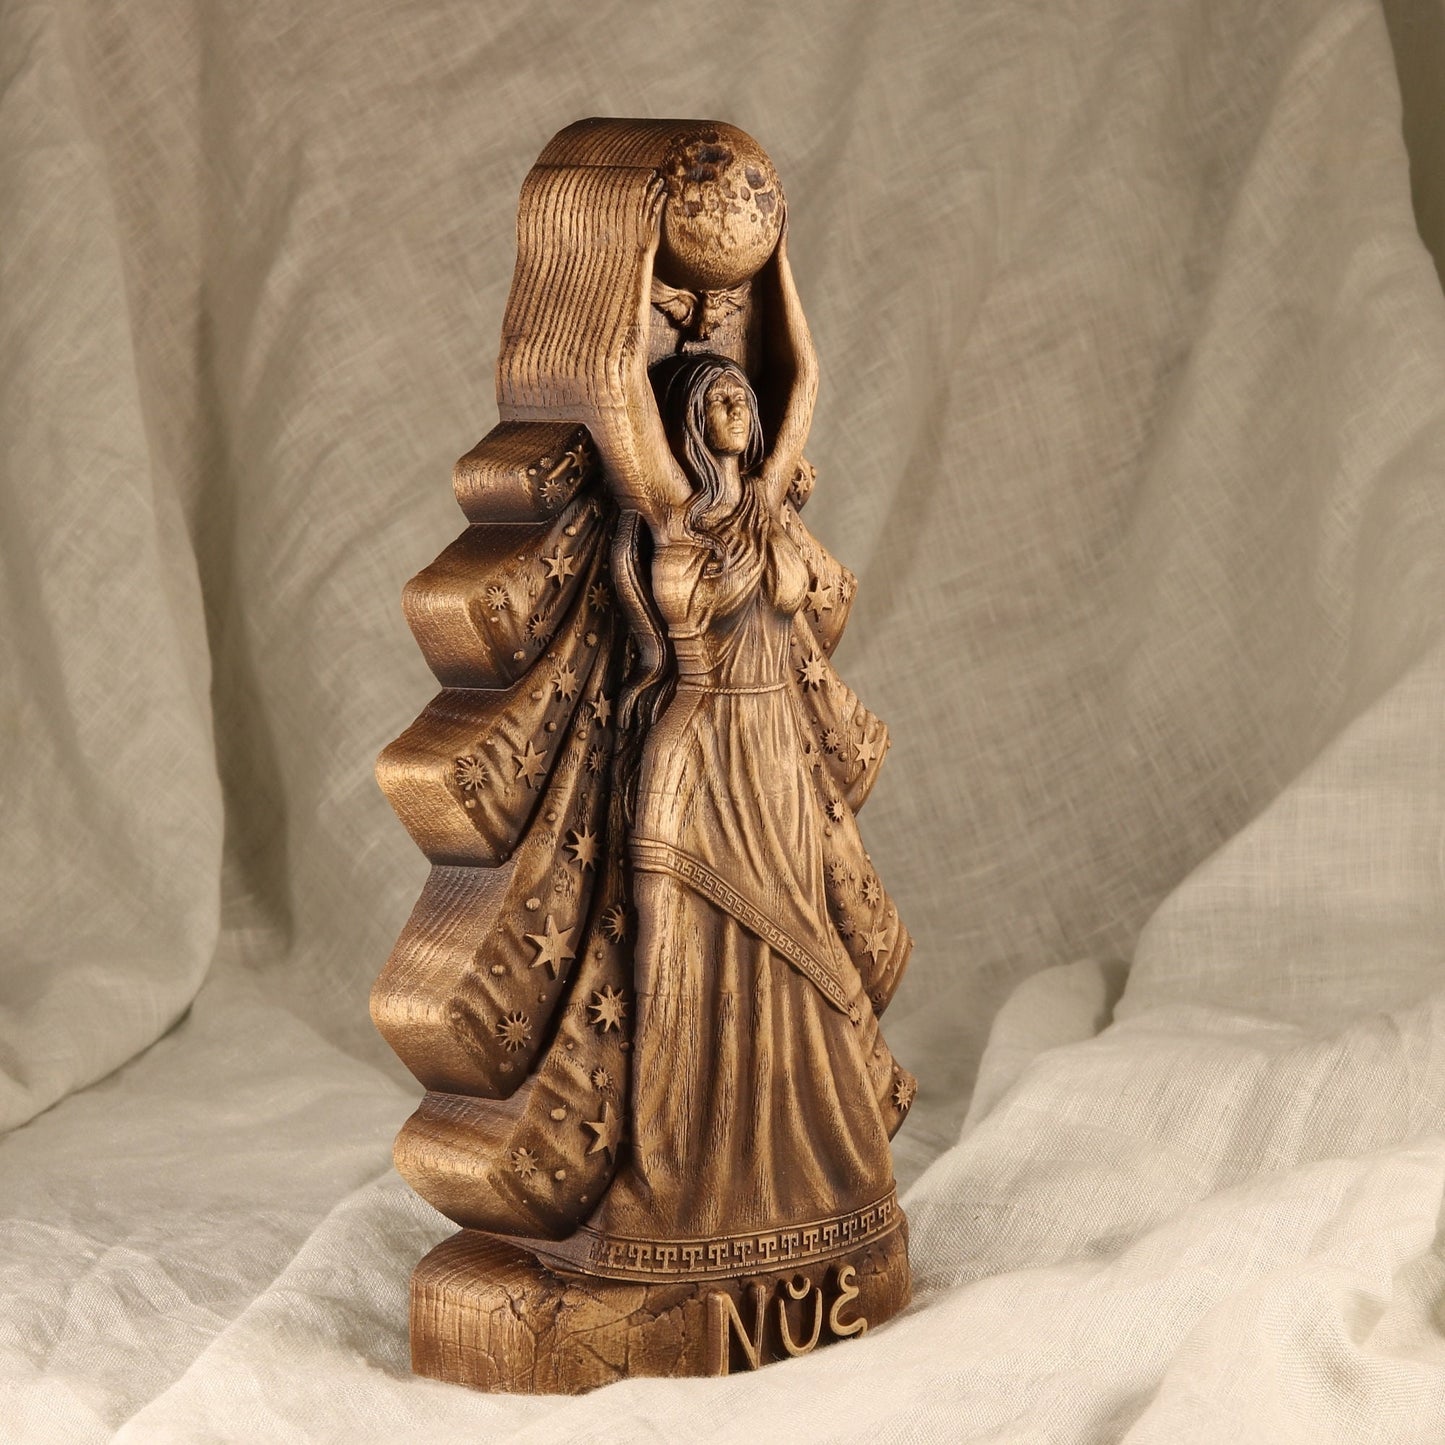 Nyx Statue - Wooden Greek Goddess Sculpture